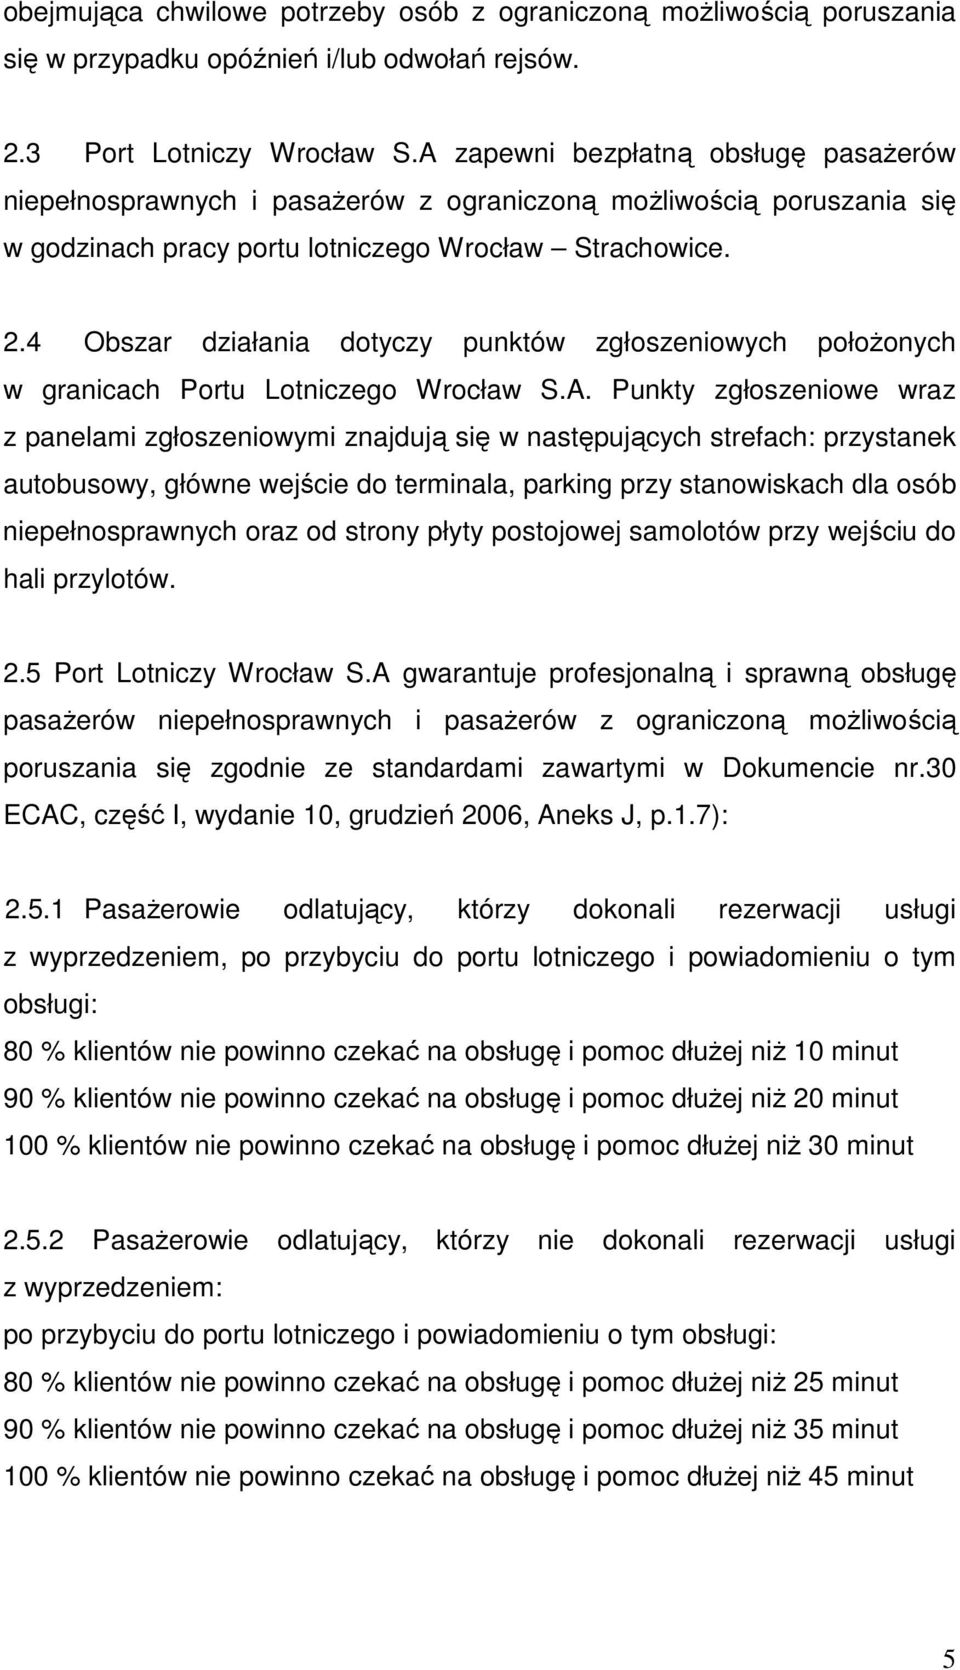 4 Obszar działania dotyczy punktów zgłoszeniowych połoŝonych w granicach Portu Lotniczego Wrocław S.A.